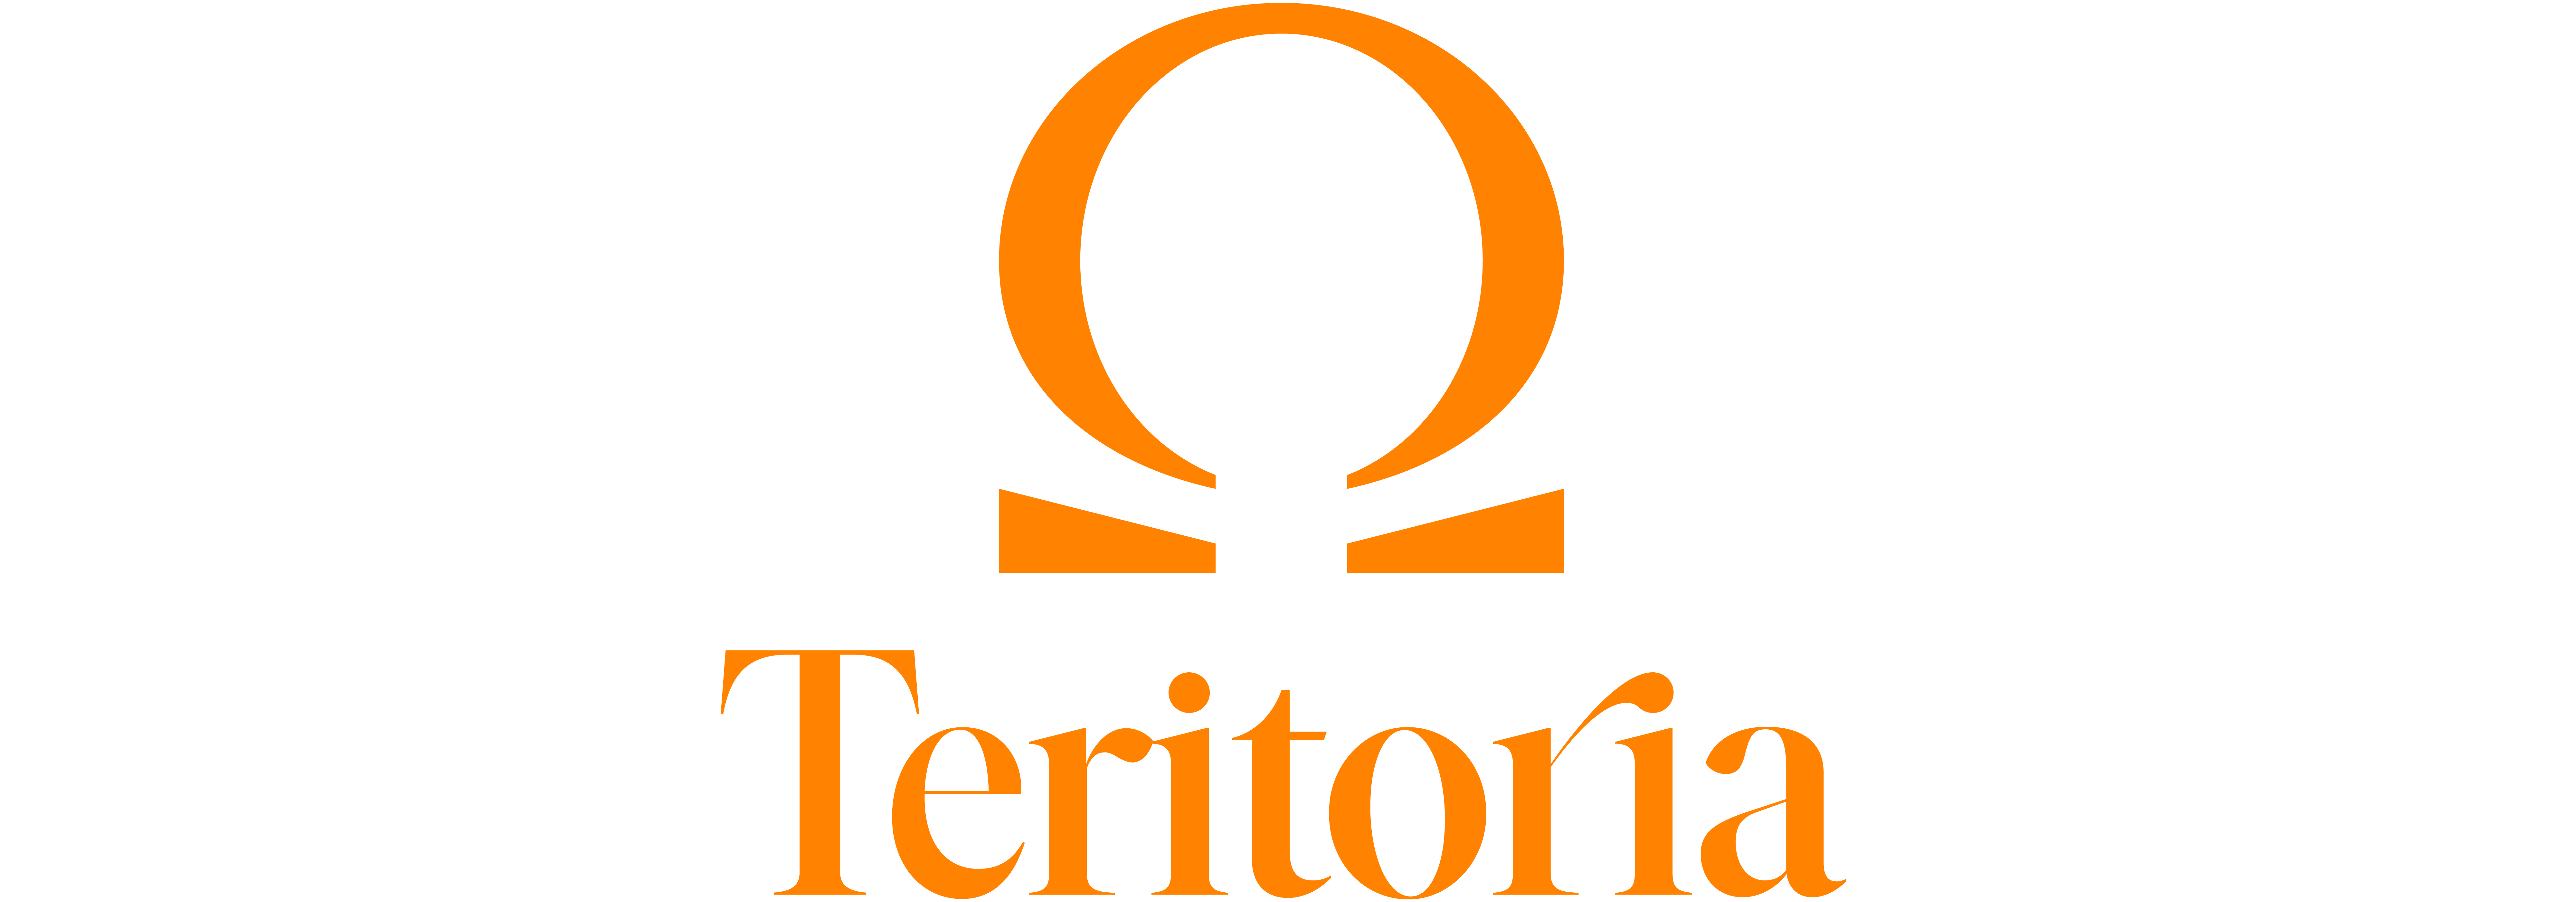 logo omega teritoria orange